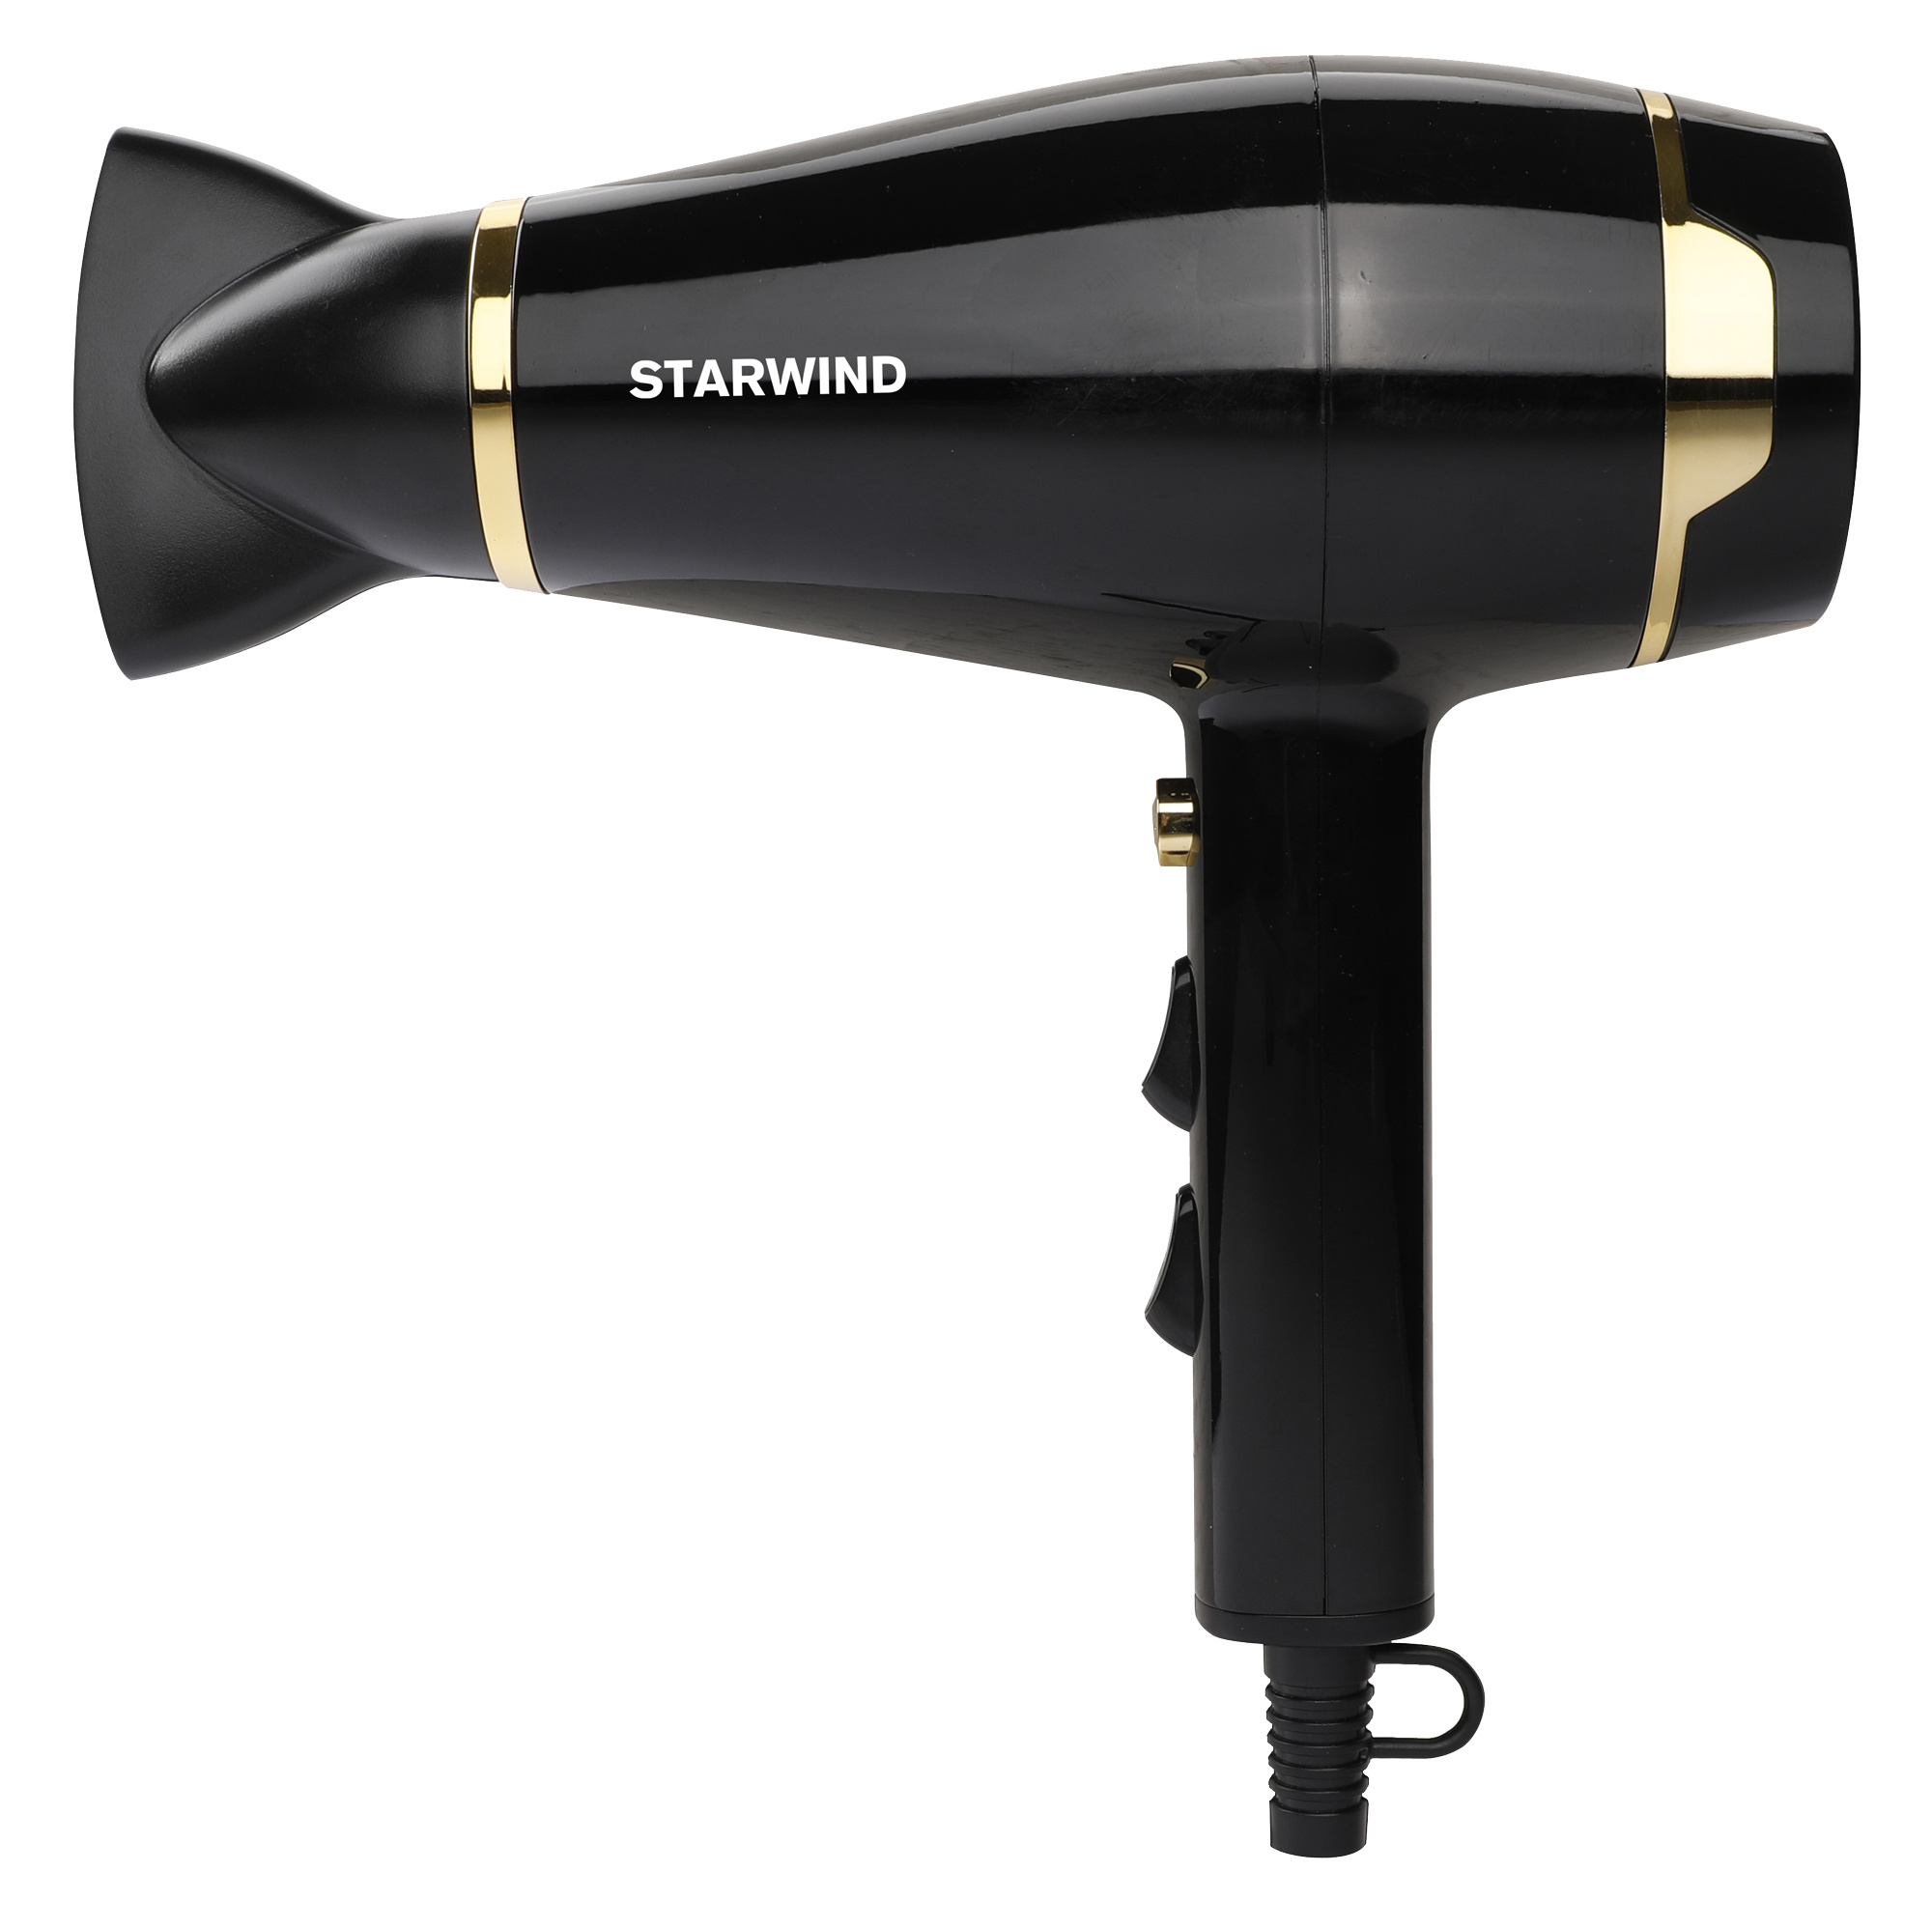 Фен STARWIND SHD 6063 2200 Вт черный фен starwind shd 6077 2200 вт золотистый серый